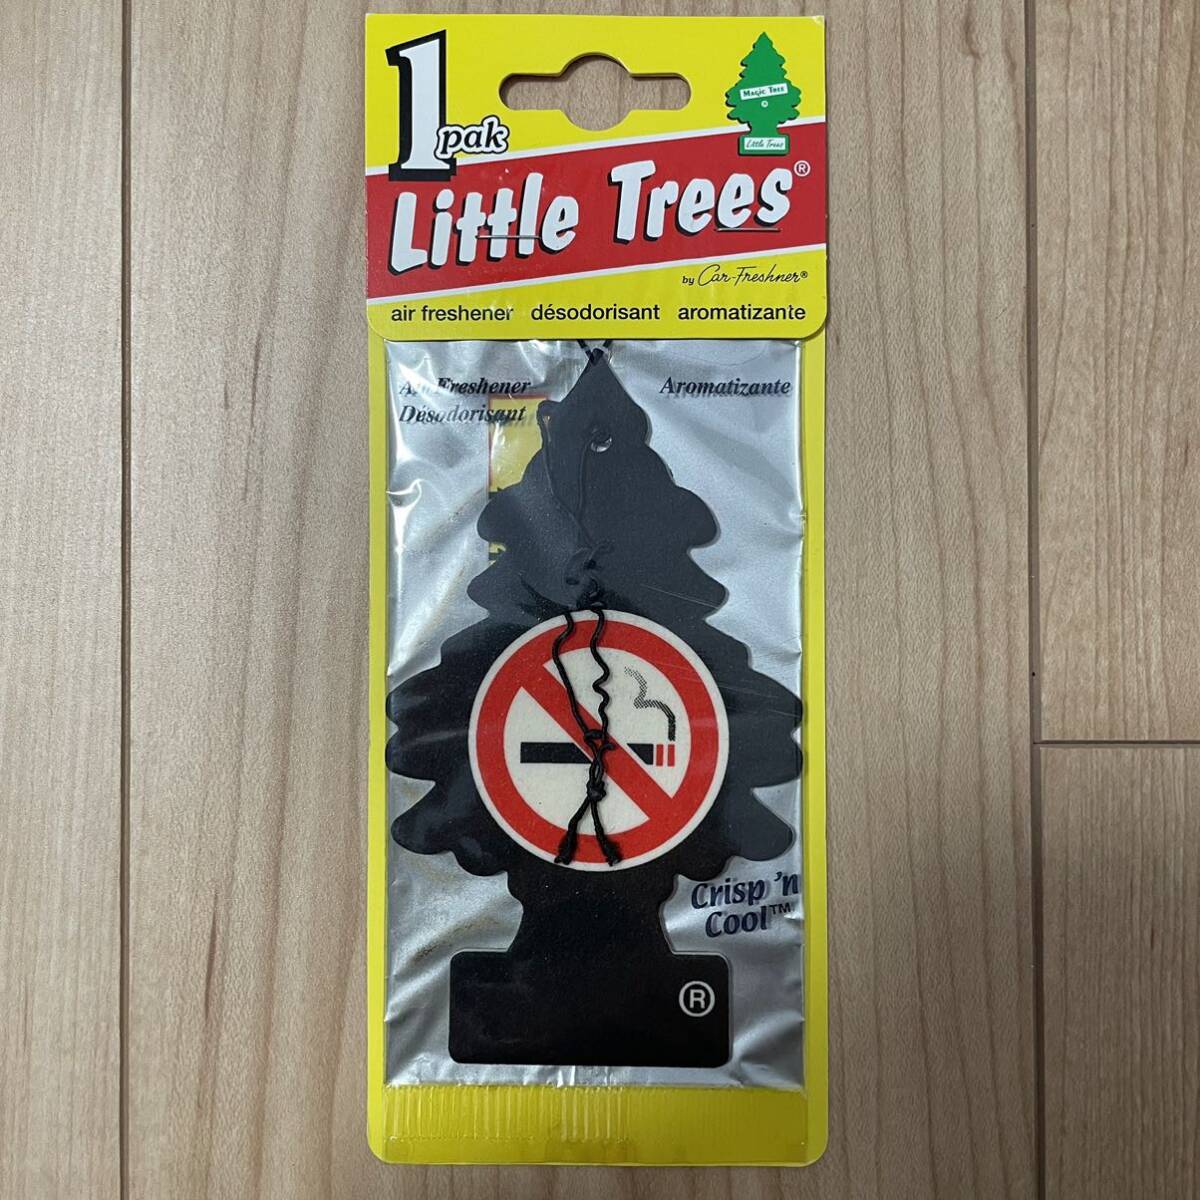 ★リトルツリー★Little Trees No Smoking ノースモーキング Crispn Cool クリスプンクール カー香水 エアフレッシュナー USDM JDM 北米の画像1